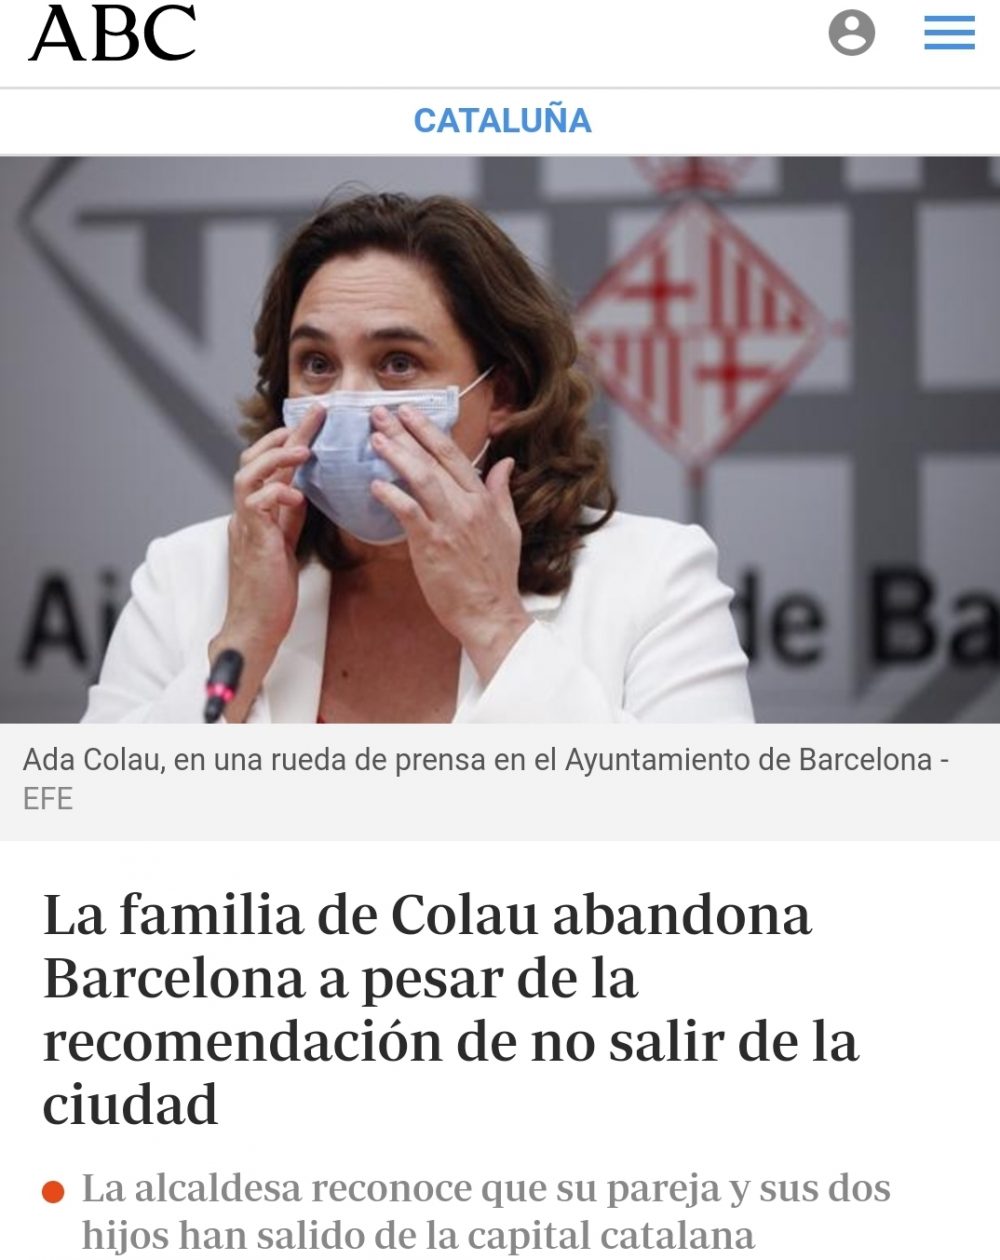 El Govern recomienda no salir de casa en Barcelona, y la familia de la alcaldesa... dando ejemplo